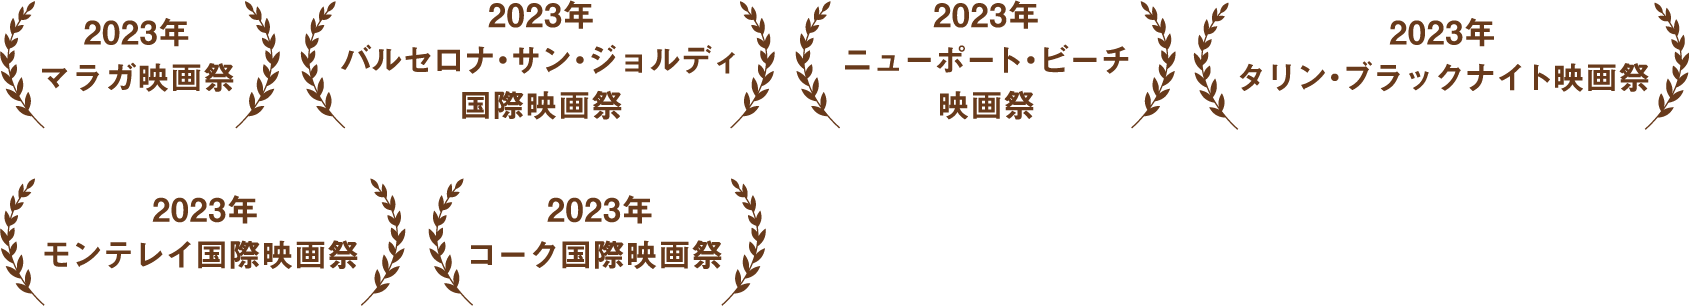 2023年マラガ映画祭｜2023年バルセロナ・サン・ジョルディ国際映画祭｜2023年ニューポート・ビーチ映画祭｜2023年タリン・ブラックナイト映画祭｜2023年｜モンテレイ国際映画祭｜2023年コーク国際映画祭